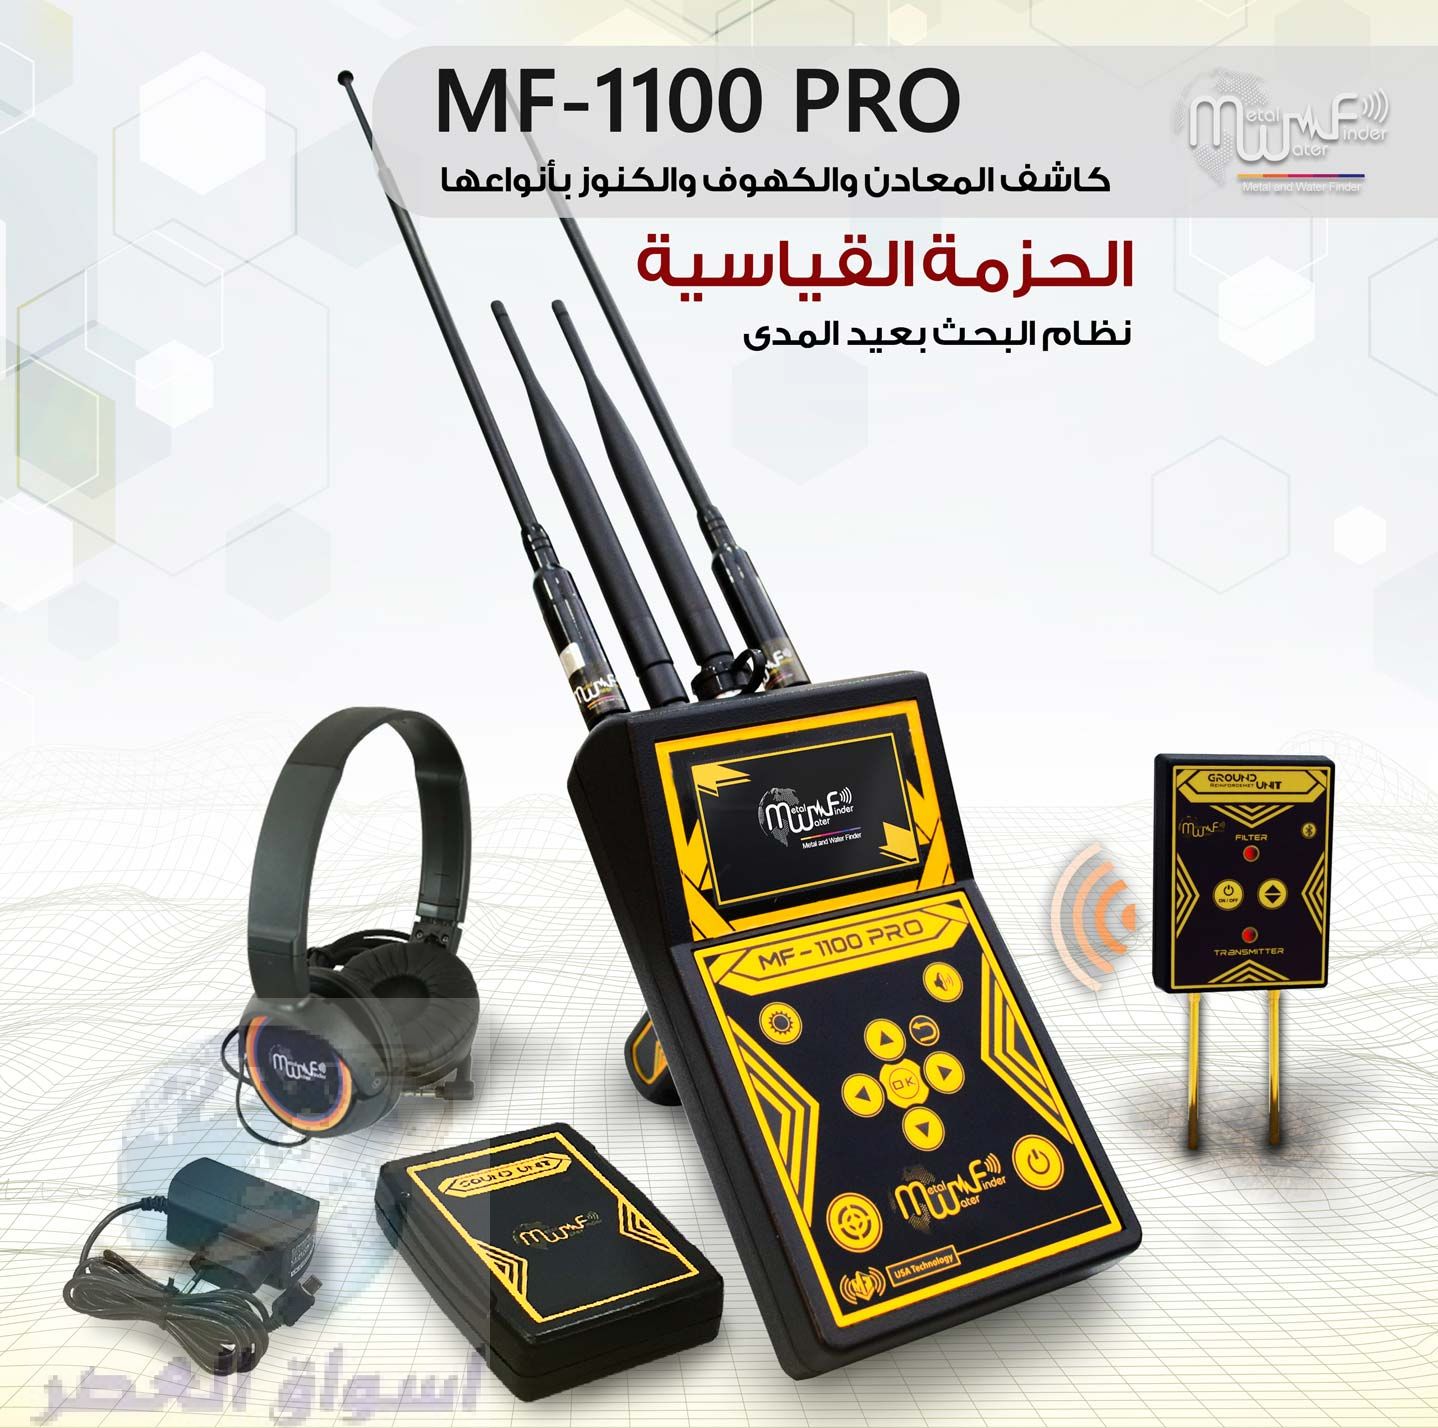 جهاز كشف الذهب الحديث 2020 – MF 1100 PRO